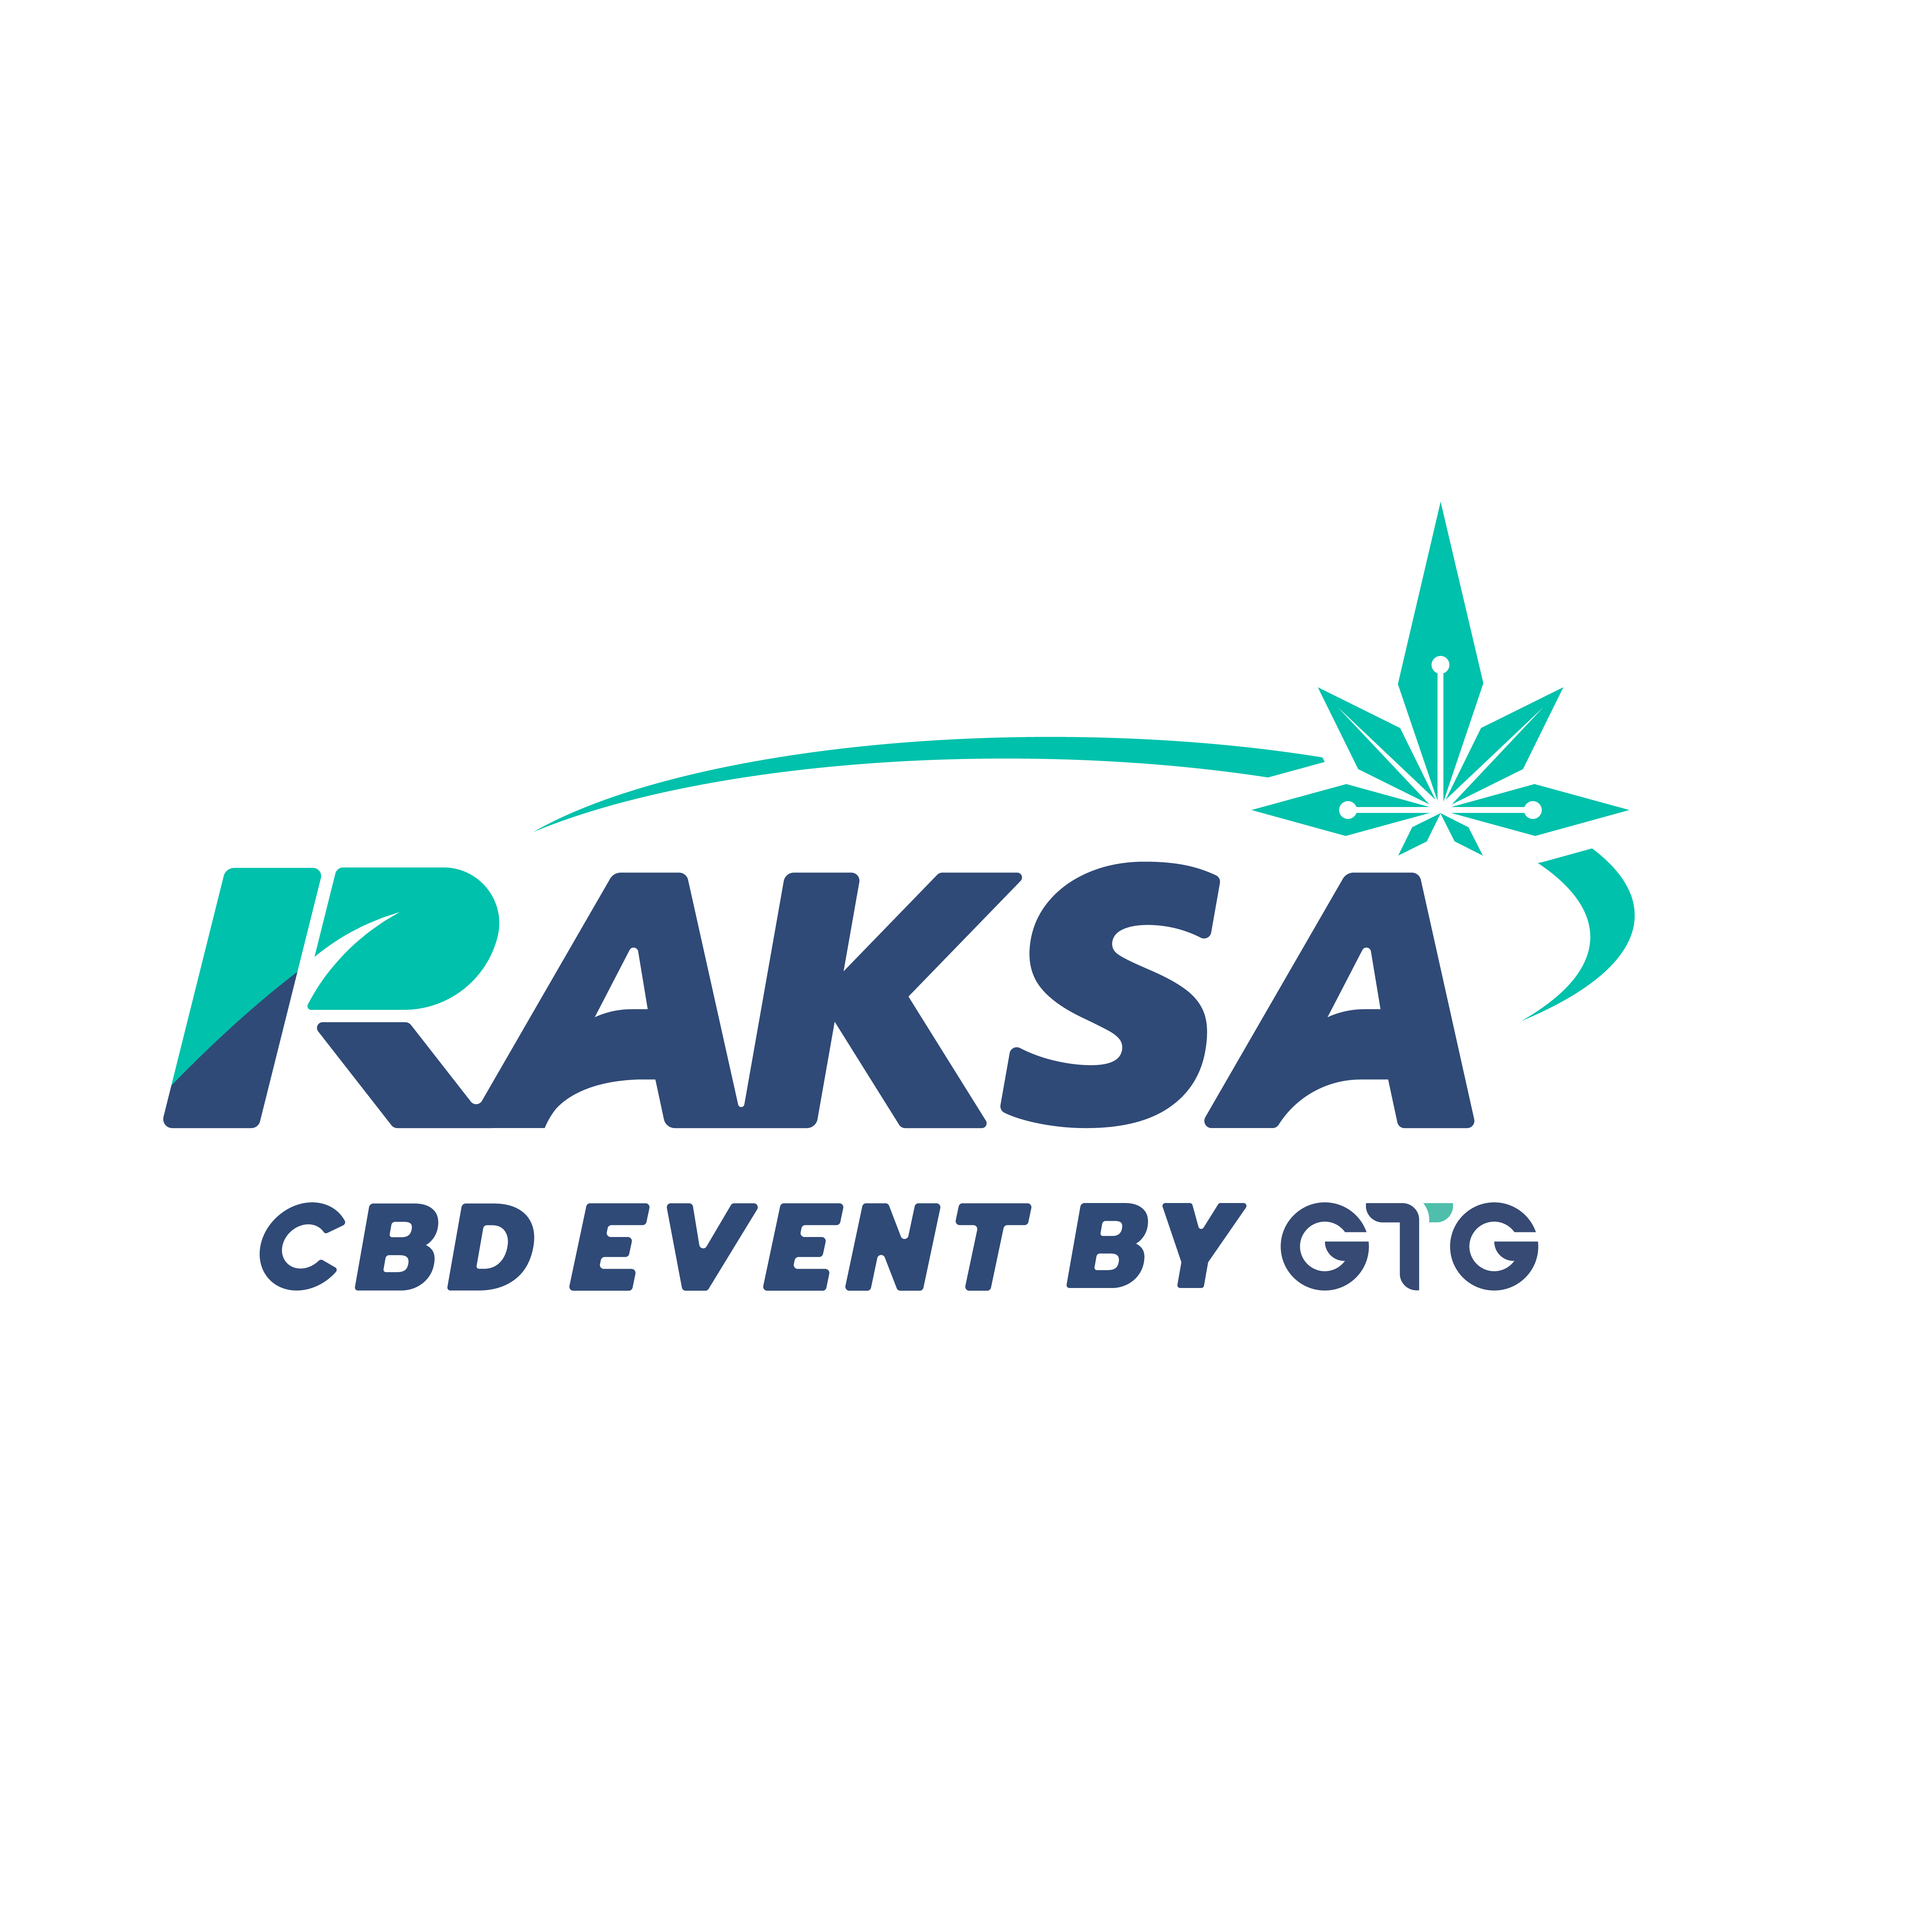 GTG เปิดตัวผลิตภัณฑ์ใหม่ ส่ง 'ซีบีดีเอเวอรี่เดย์บาล์ม' บุกตลาด ในงาน "RAKSA CBD EVENT BY GTG"